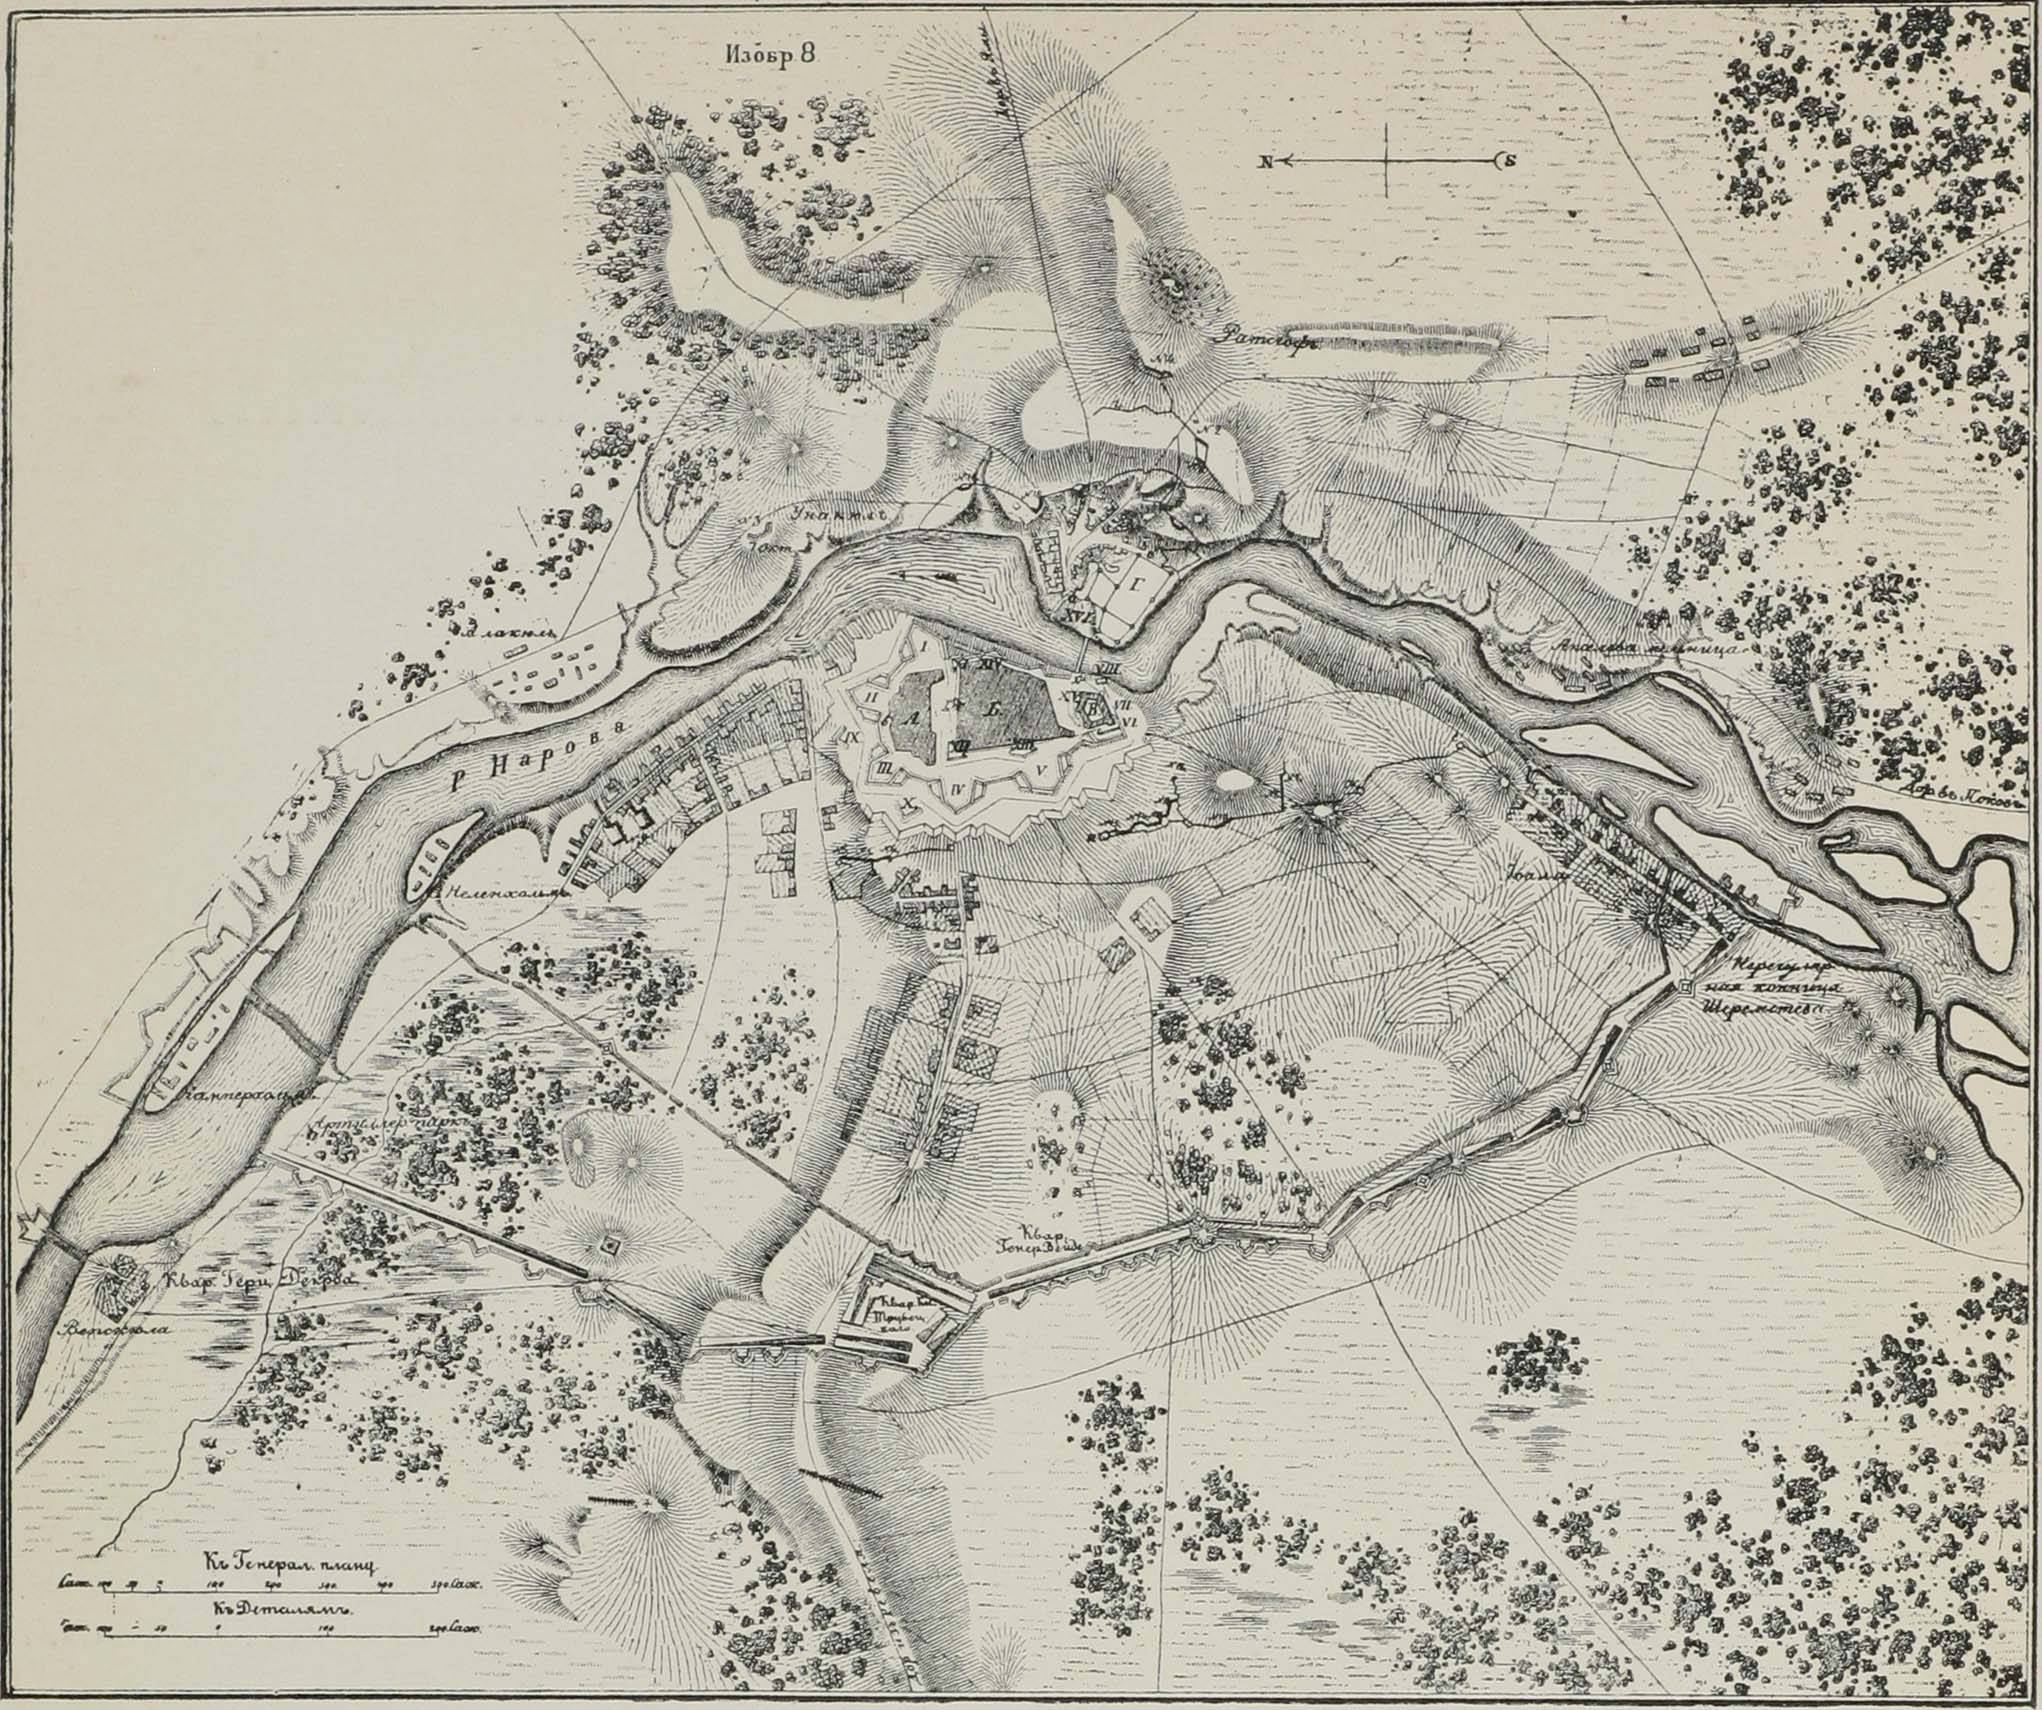 Планъ осады Нарвы въ 1700 году.